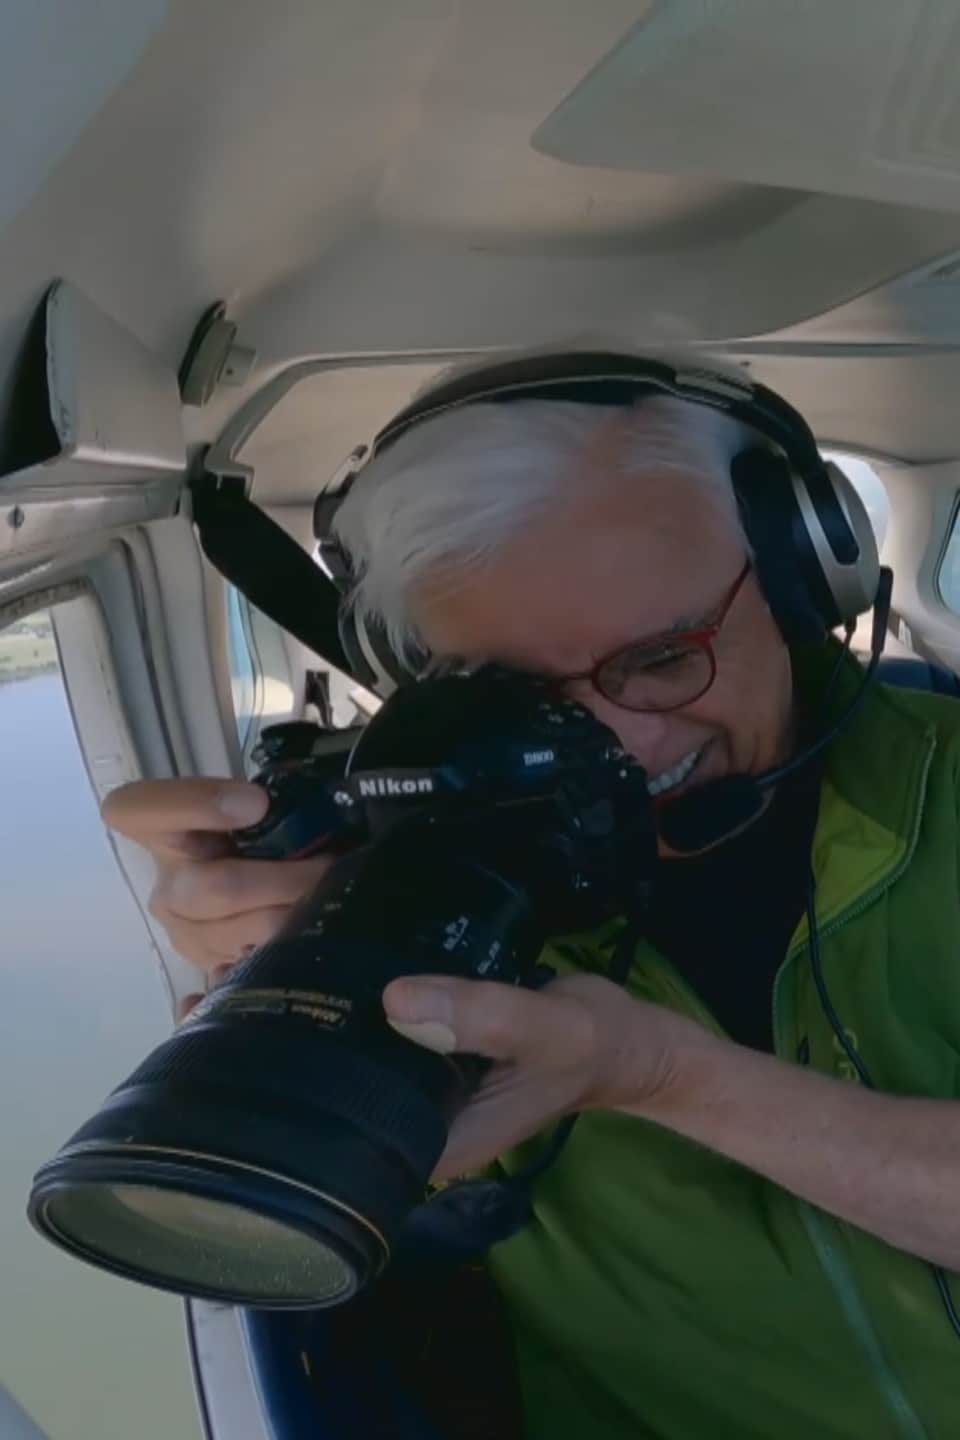 Pierre Lahoud prend des photos à coté du pilote dans le petit avion.